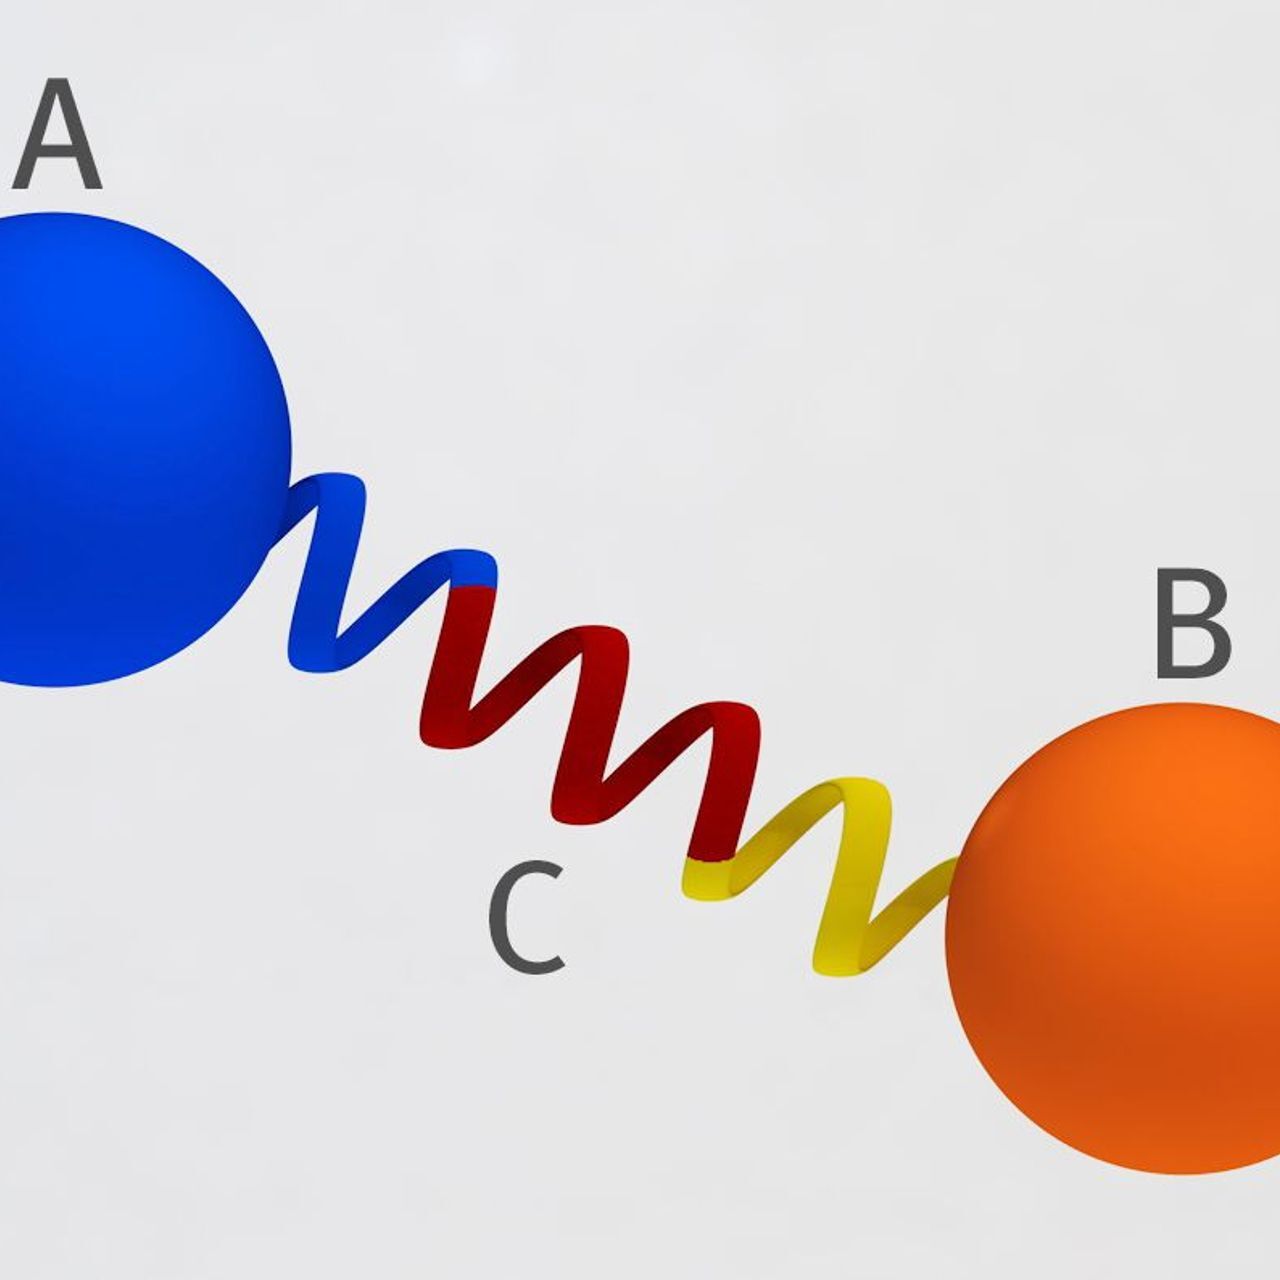 შვეიცარიაში PSI-ში შემუშავებული პროტეინის ხიდის პრინციპის რენდირება: ორი ცილა (A და B) დაკავშირებულია ერთმანეთთან ფიქსირებული მანძილითა და კუთხით, ხისტი ცილის სპირალის საშუალებით, ისე რომ ისინი ვერ უახლოვდებიან ერთმანეთს და ვერ ურთიერთობენ (გრაფიკა: მაჰირ ძამბეგოვიჩი/პოლ შერერის ინსტიტუტი)